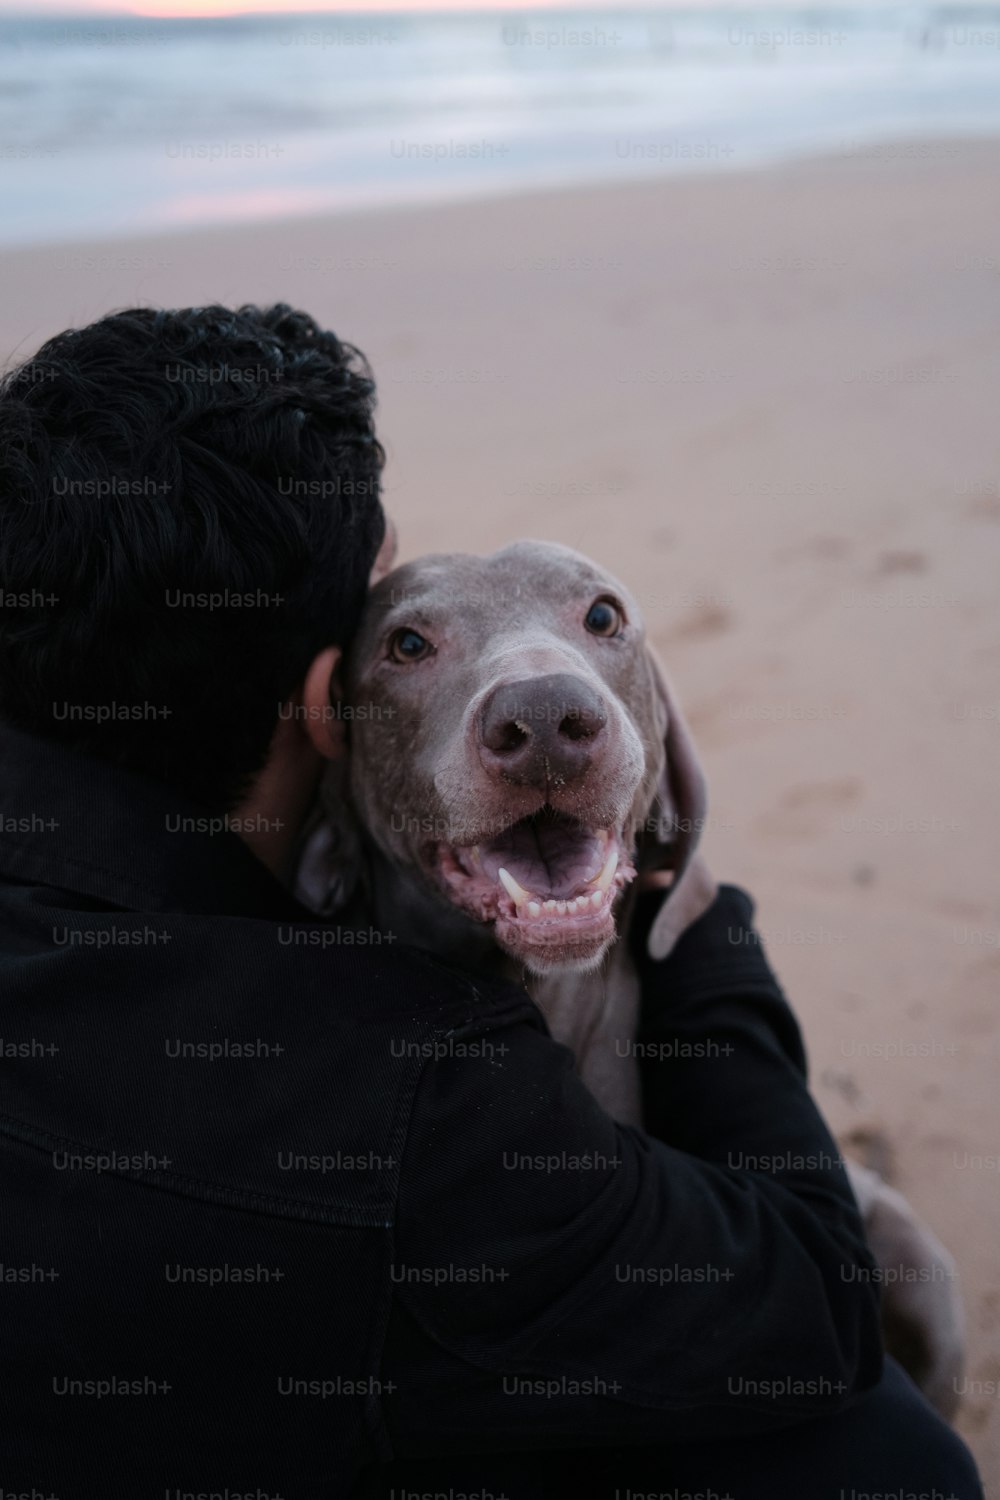 Un homme tenant un chien sur la plage